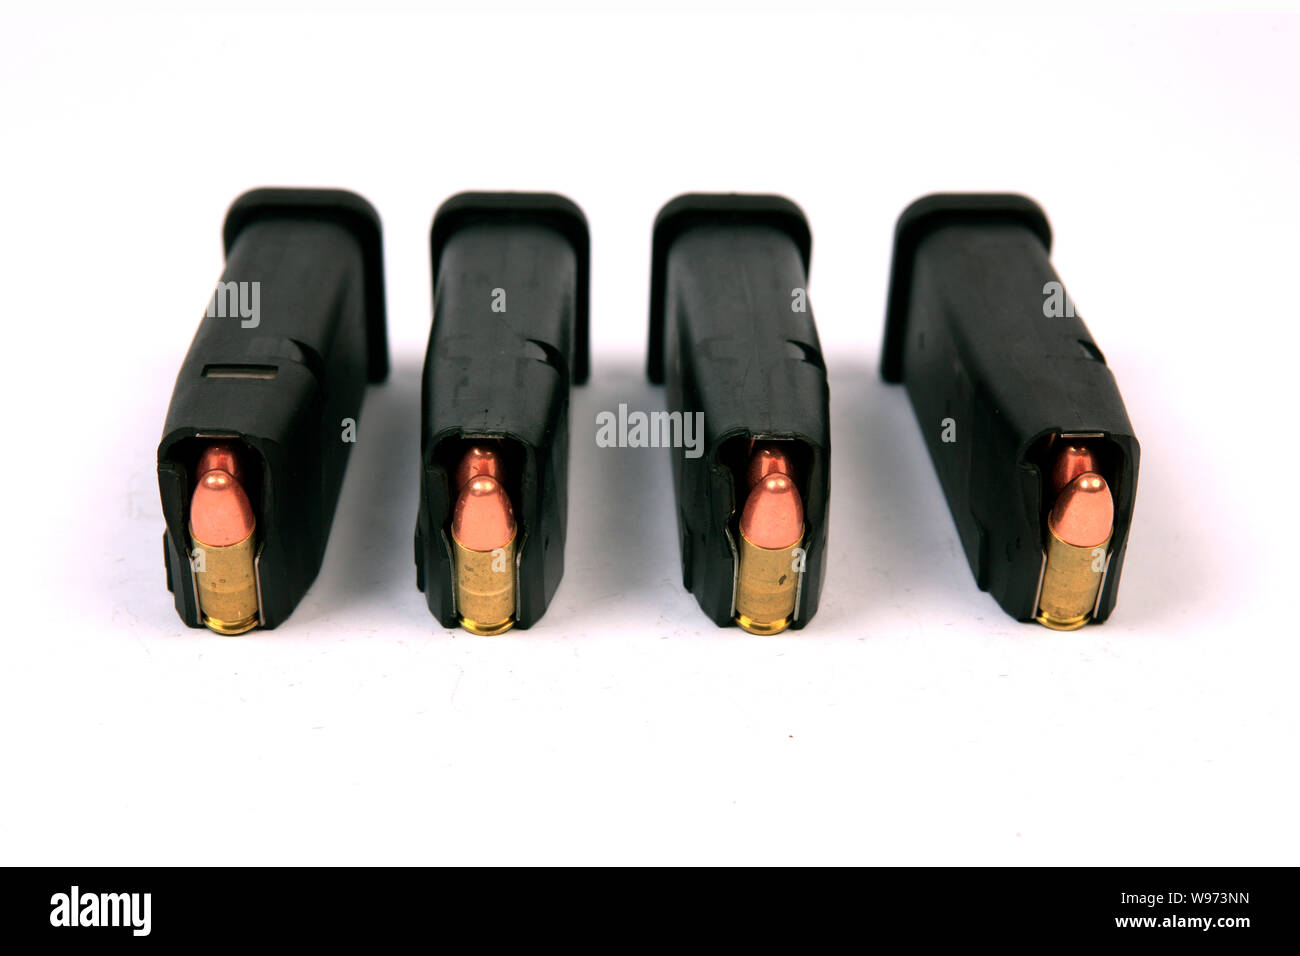 Cuatro clips de 9mm munición de una pistola Glock, conteniendo cada uno 15 rondas Foto de stock